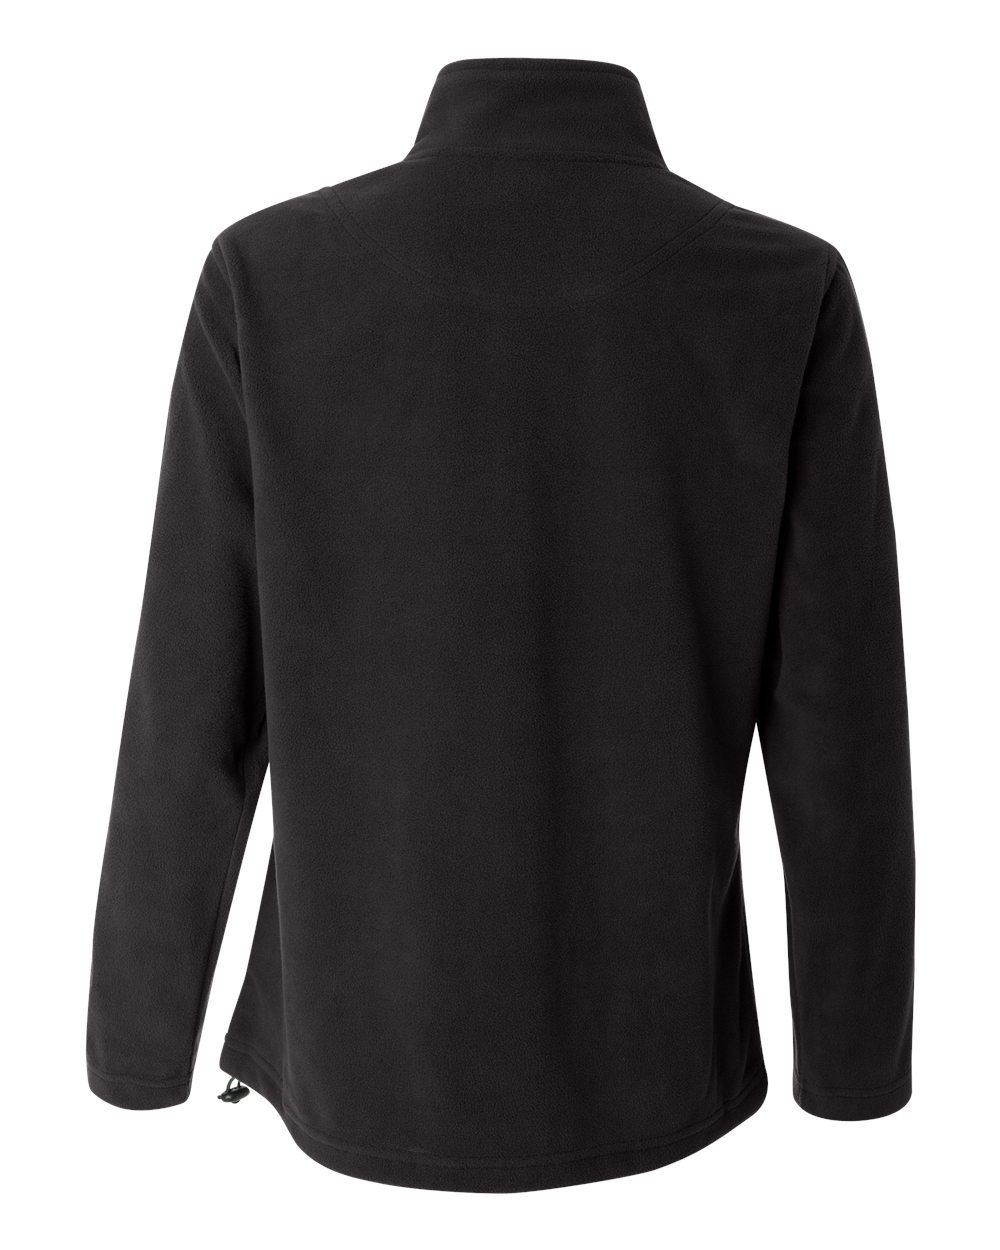 'FeatherLite 5301 Women's Micro Fleece Full-Zip Jacket'